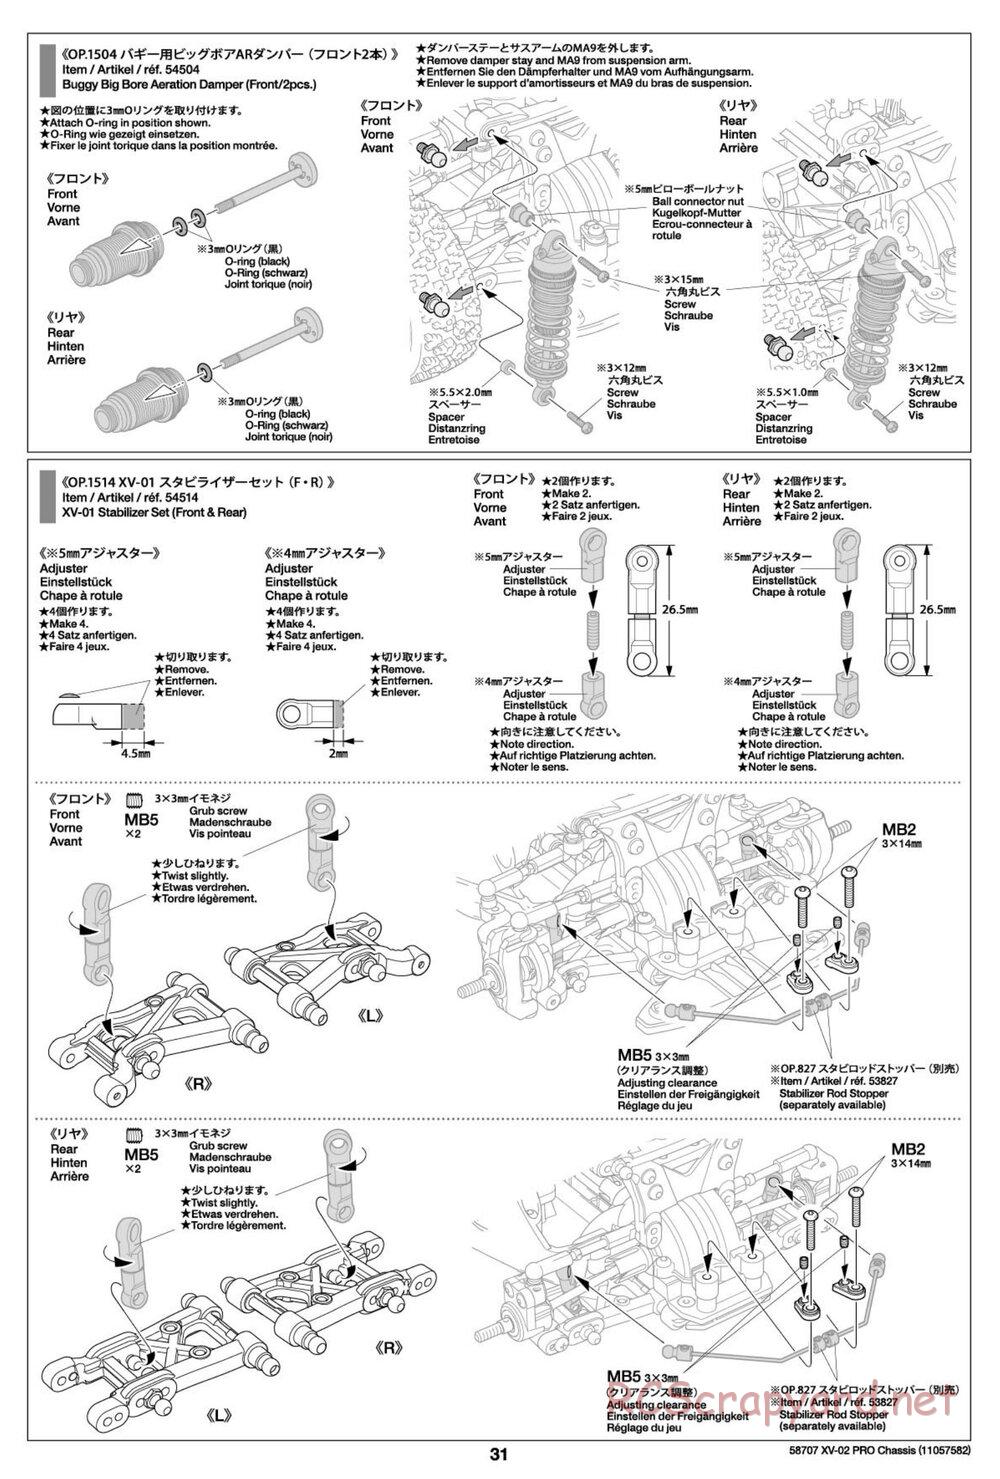 Tamiya - XV-02 Pro Chassis - Manual - Page 31